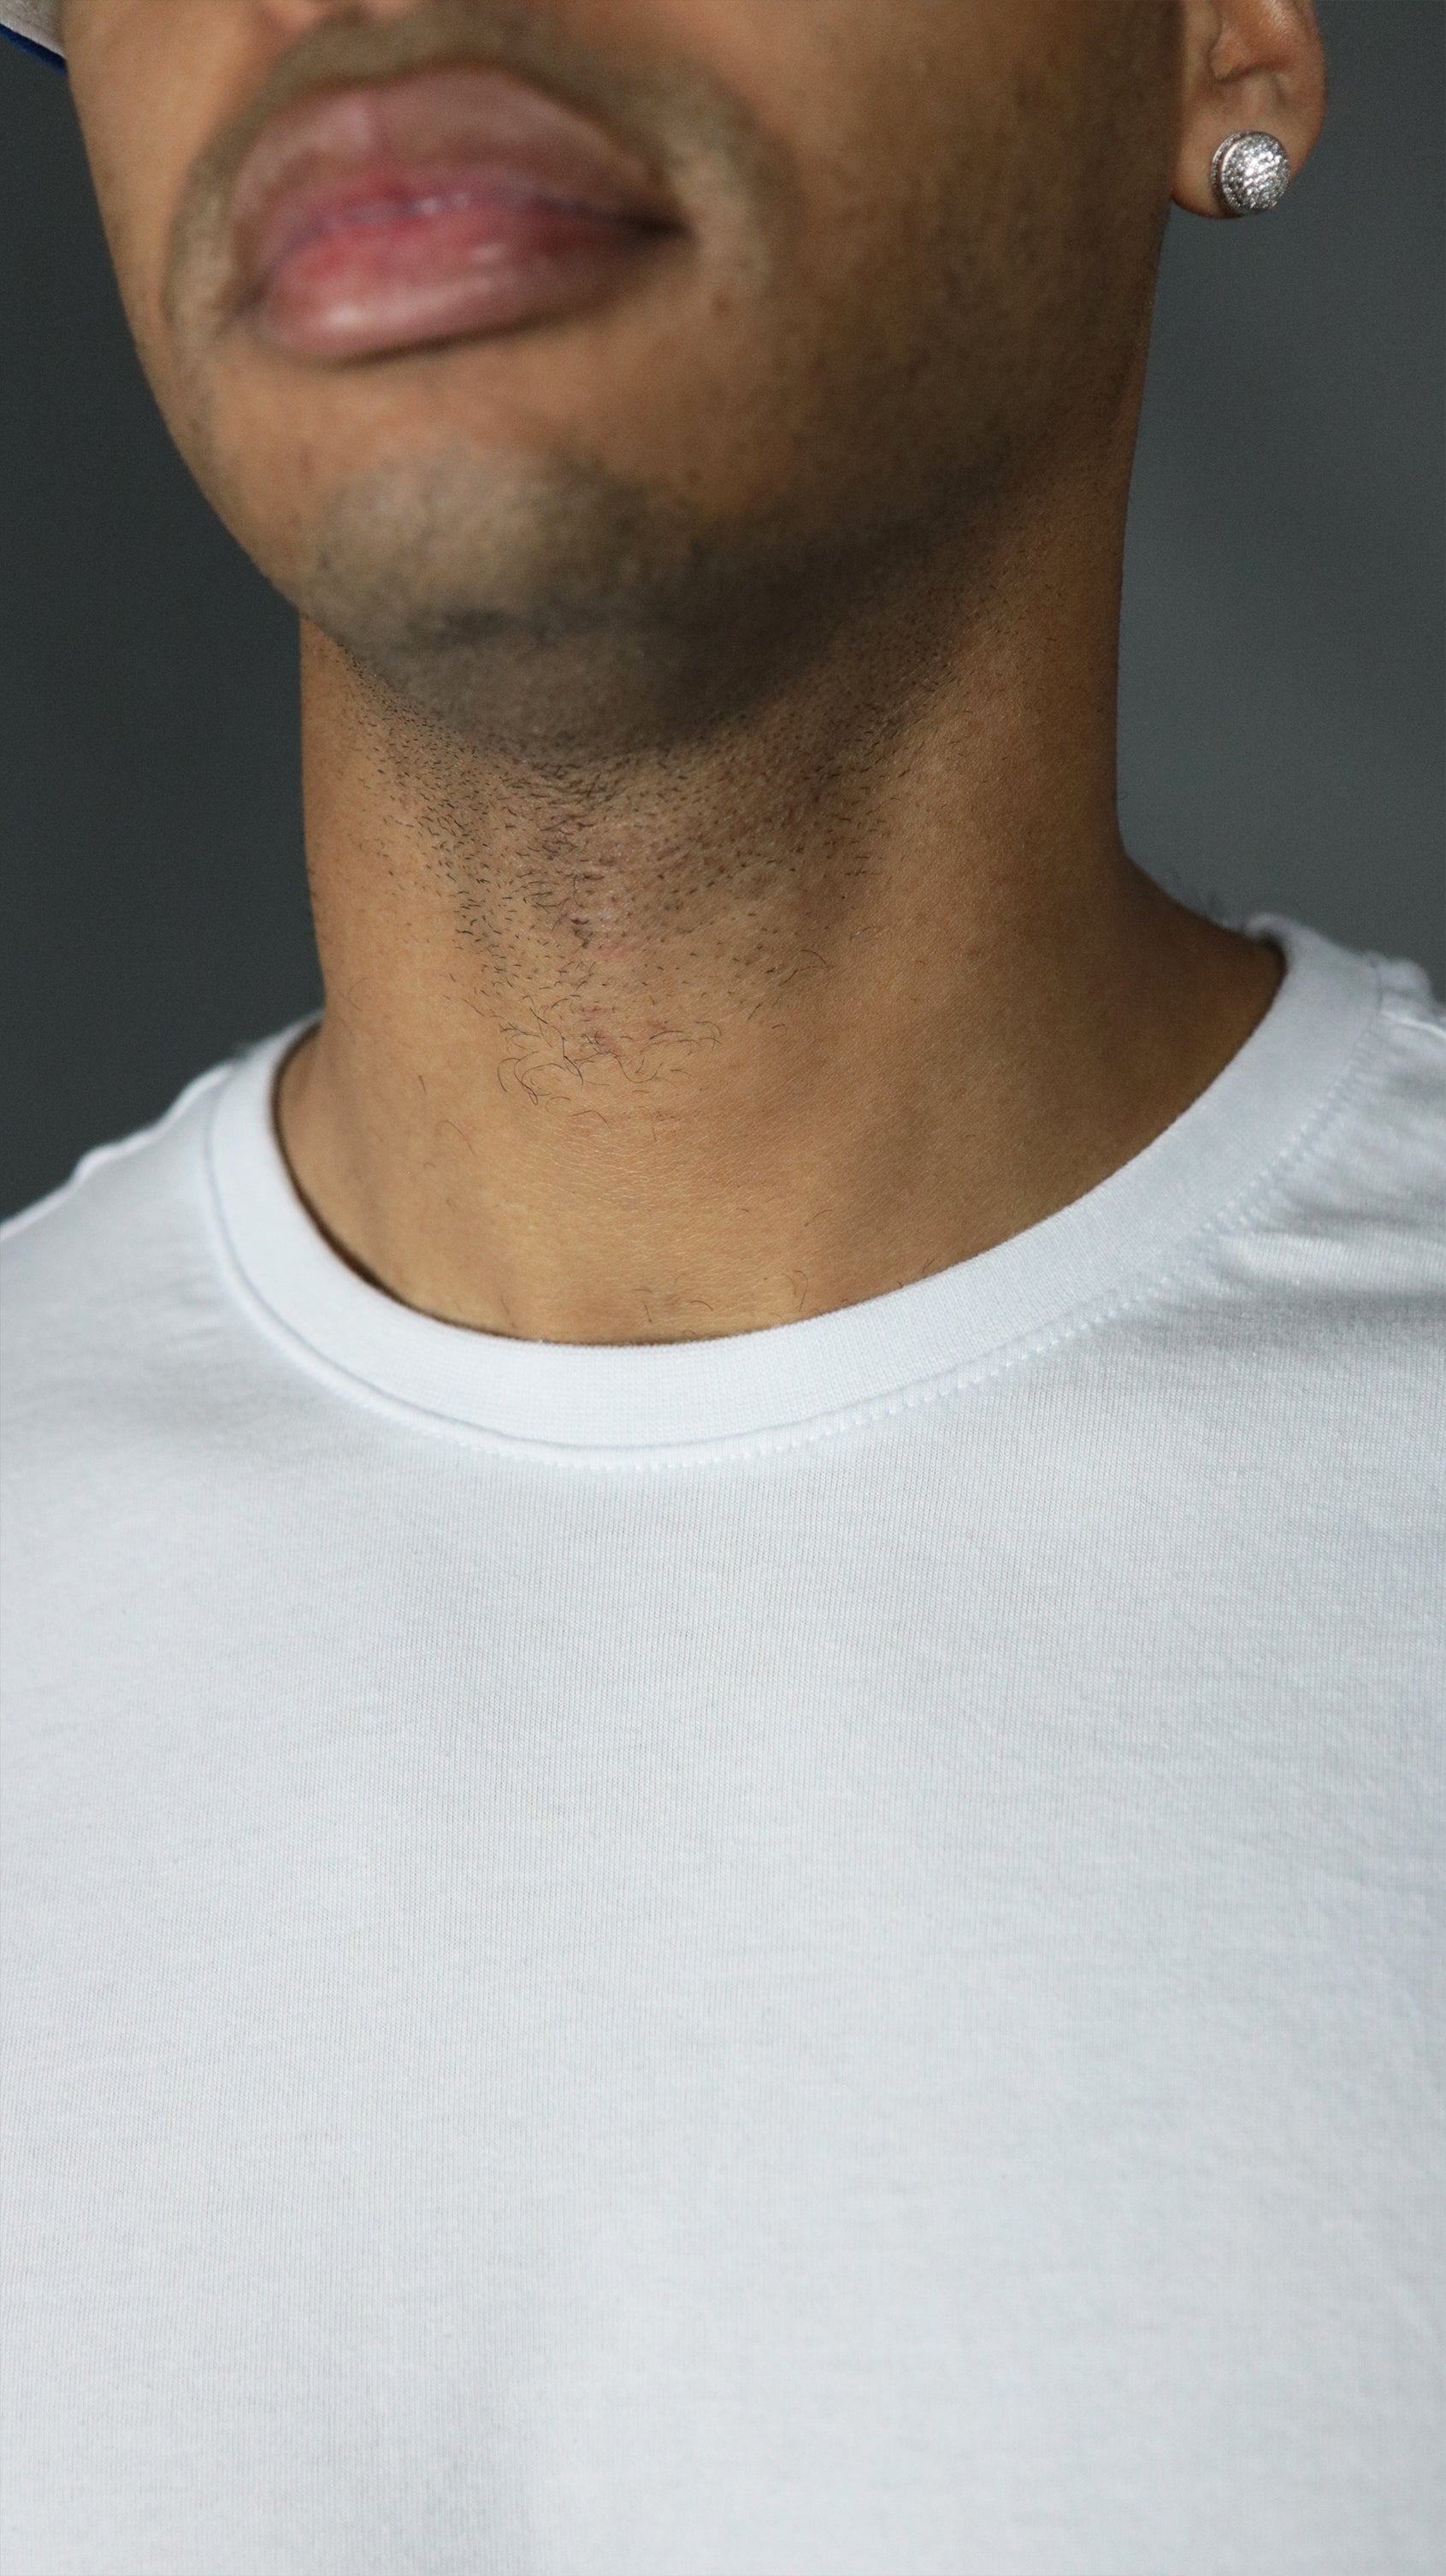 The front collar of the Jordan Craig men's scoop bottom tshirt.